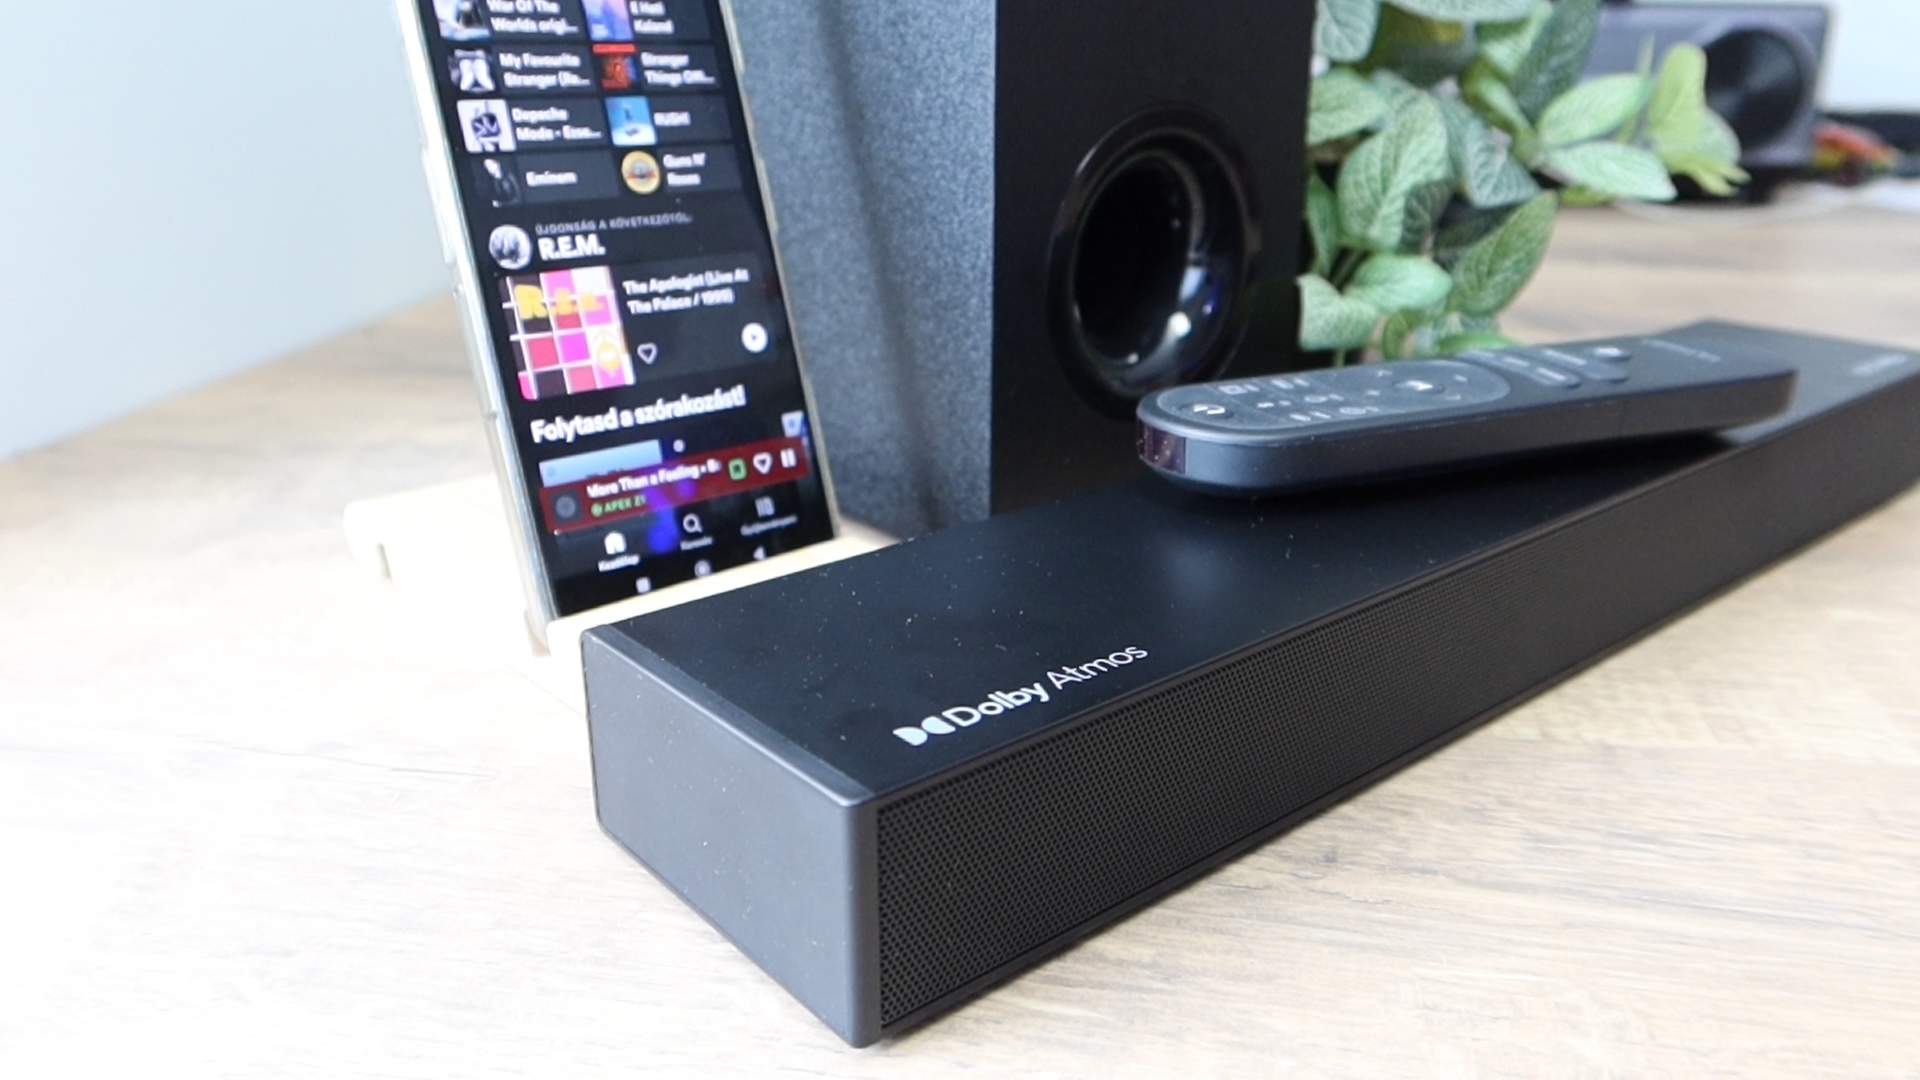 Nagyot szól! - Ultimea Nova S50 Dolby Atmos Soundbar teszt 13